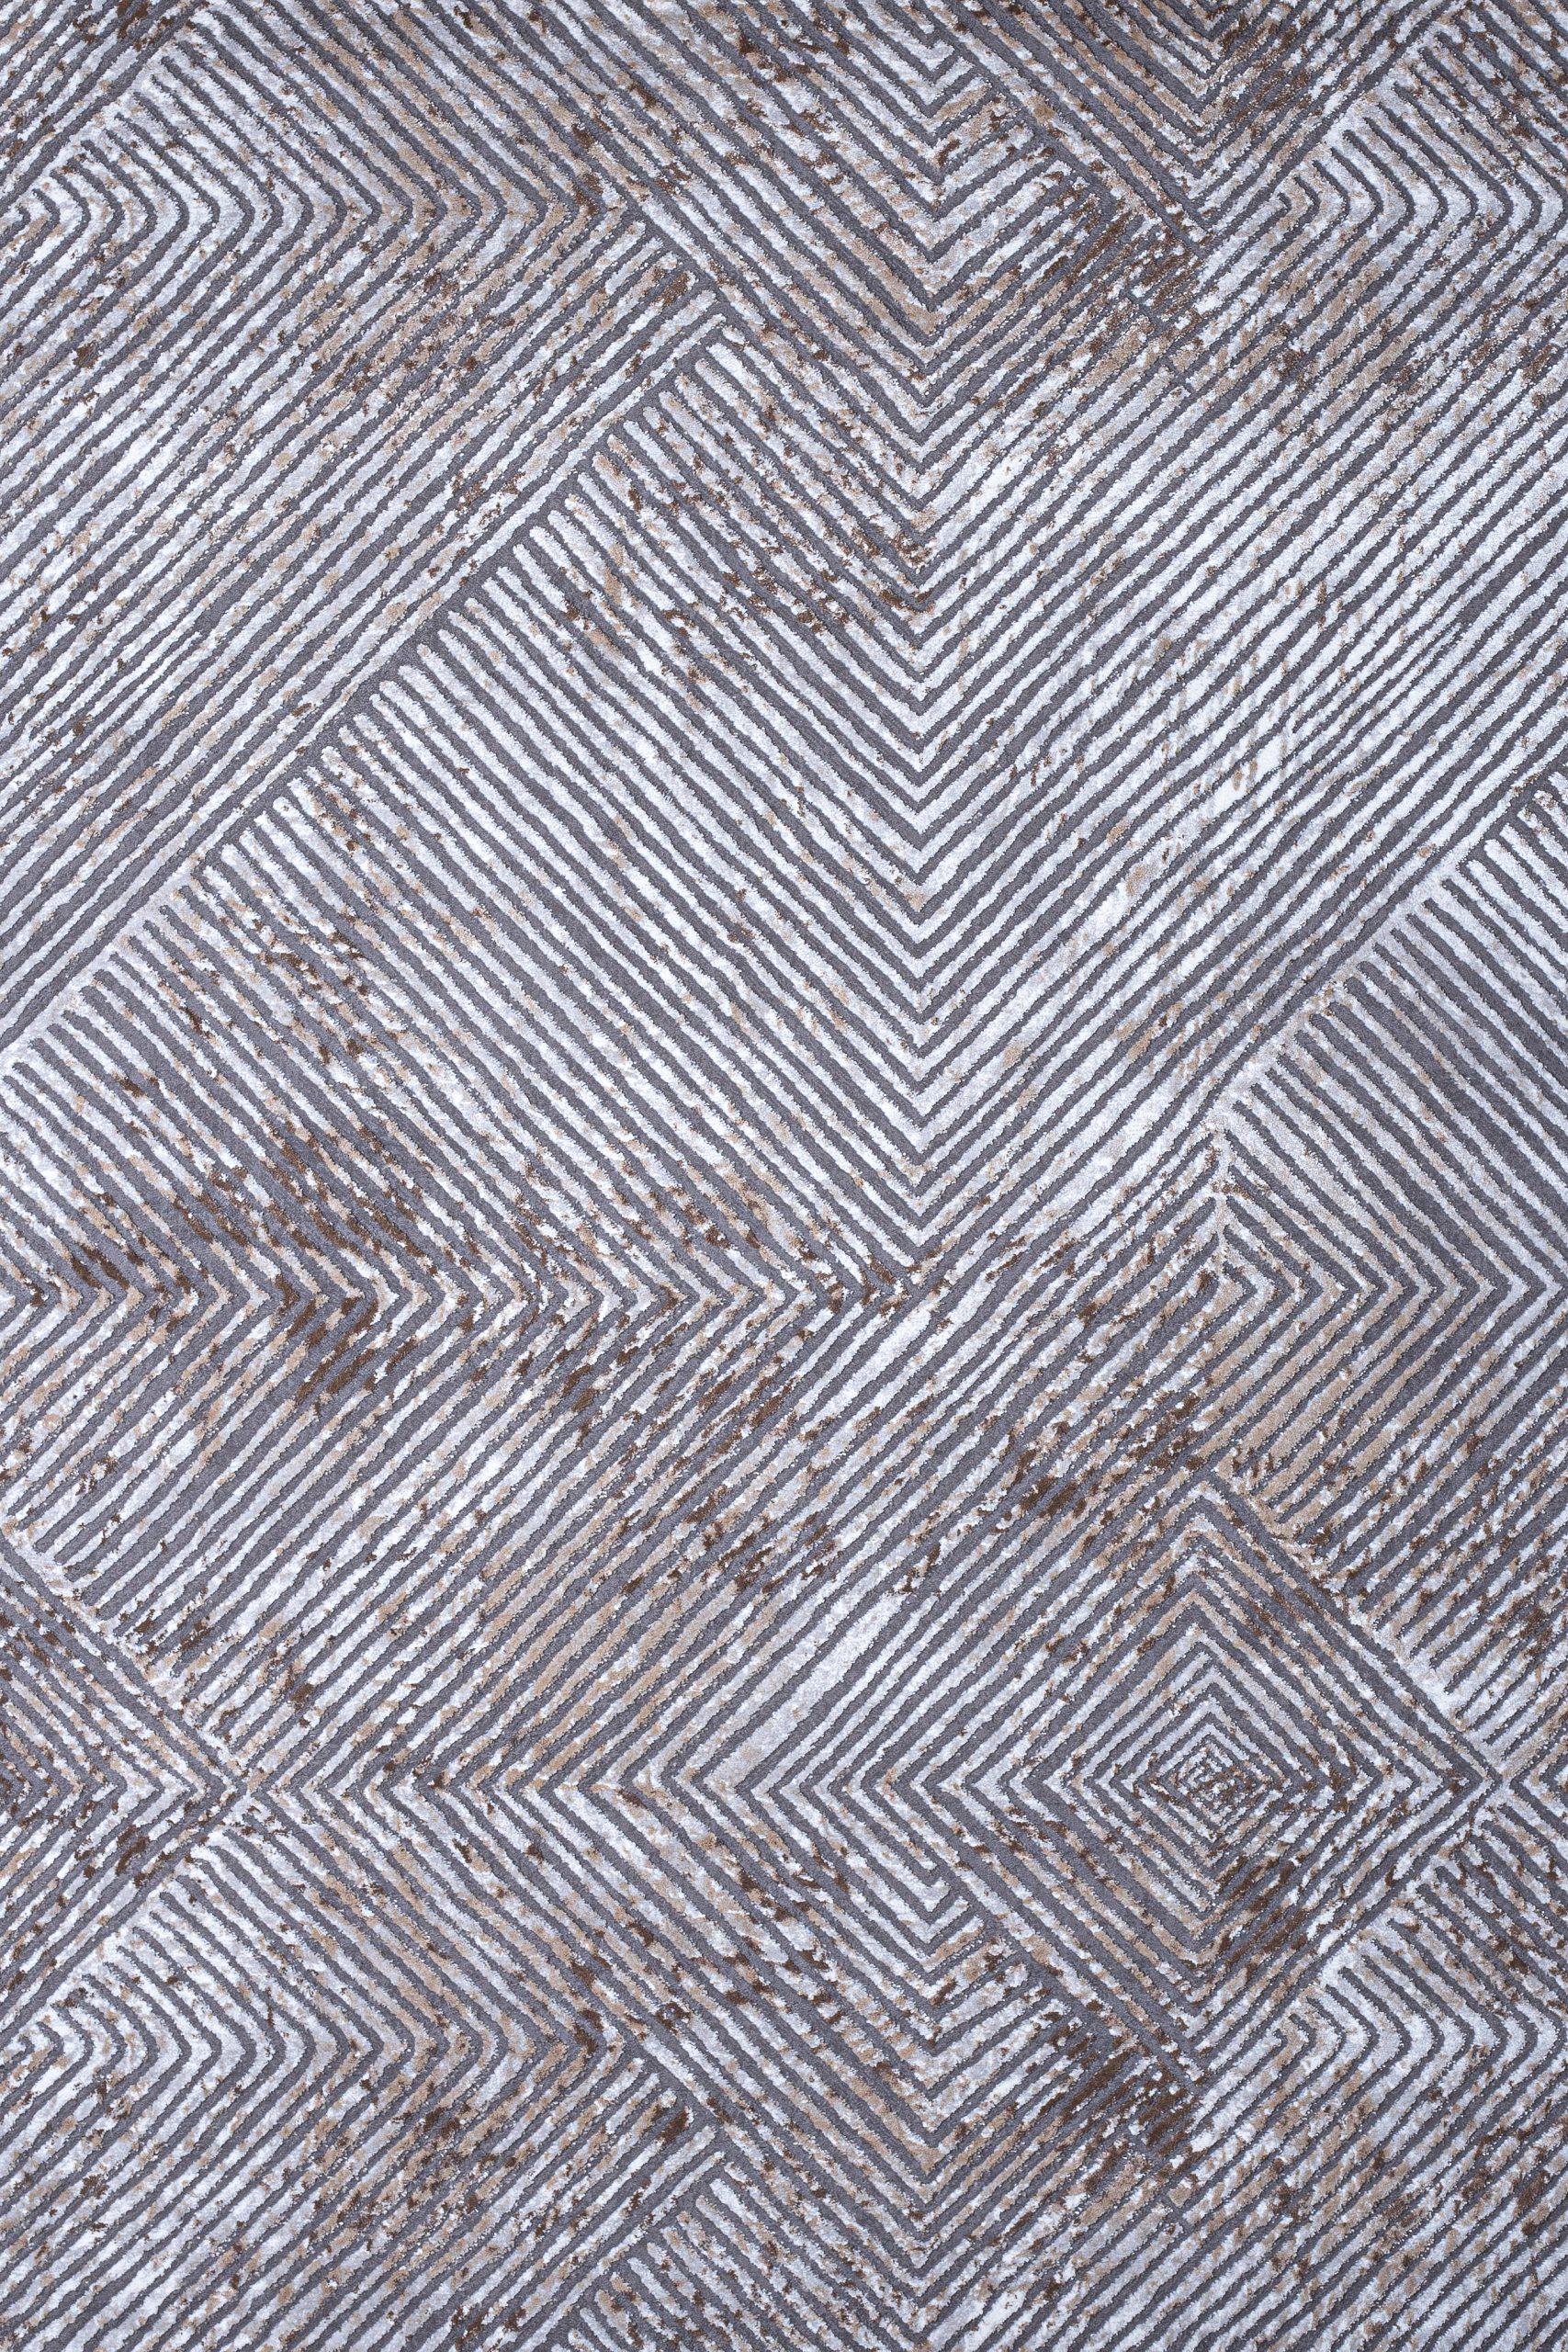 Γραμμικό χαλί γκρι μπεζ Ostia 7100/976 - 2,00x2,50 Colore Colori